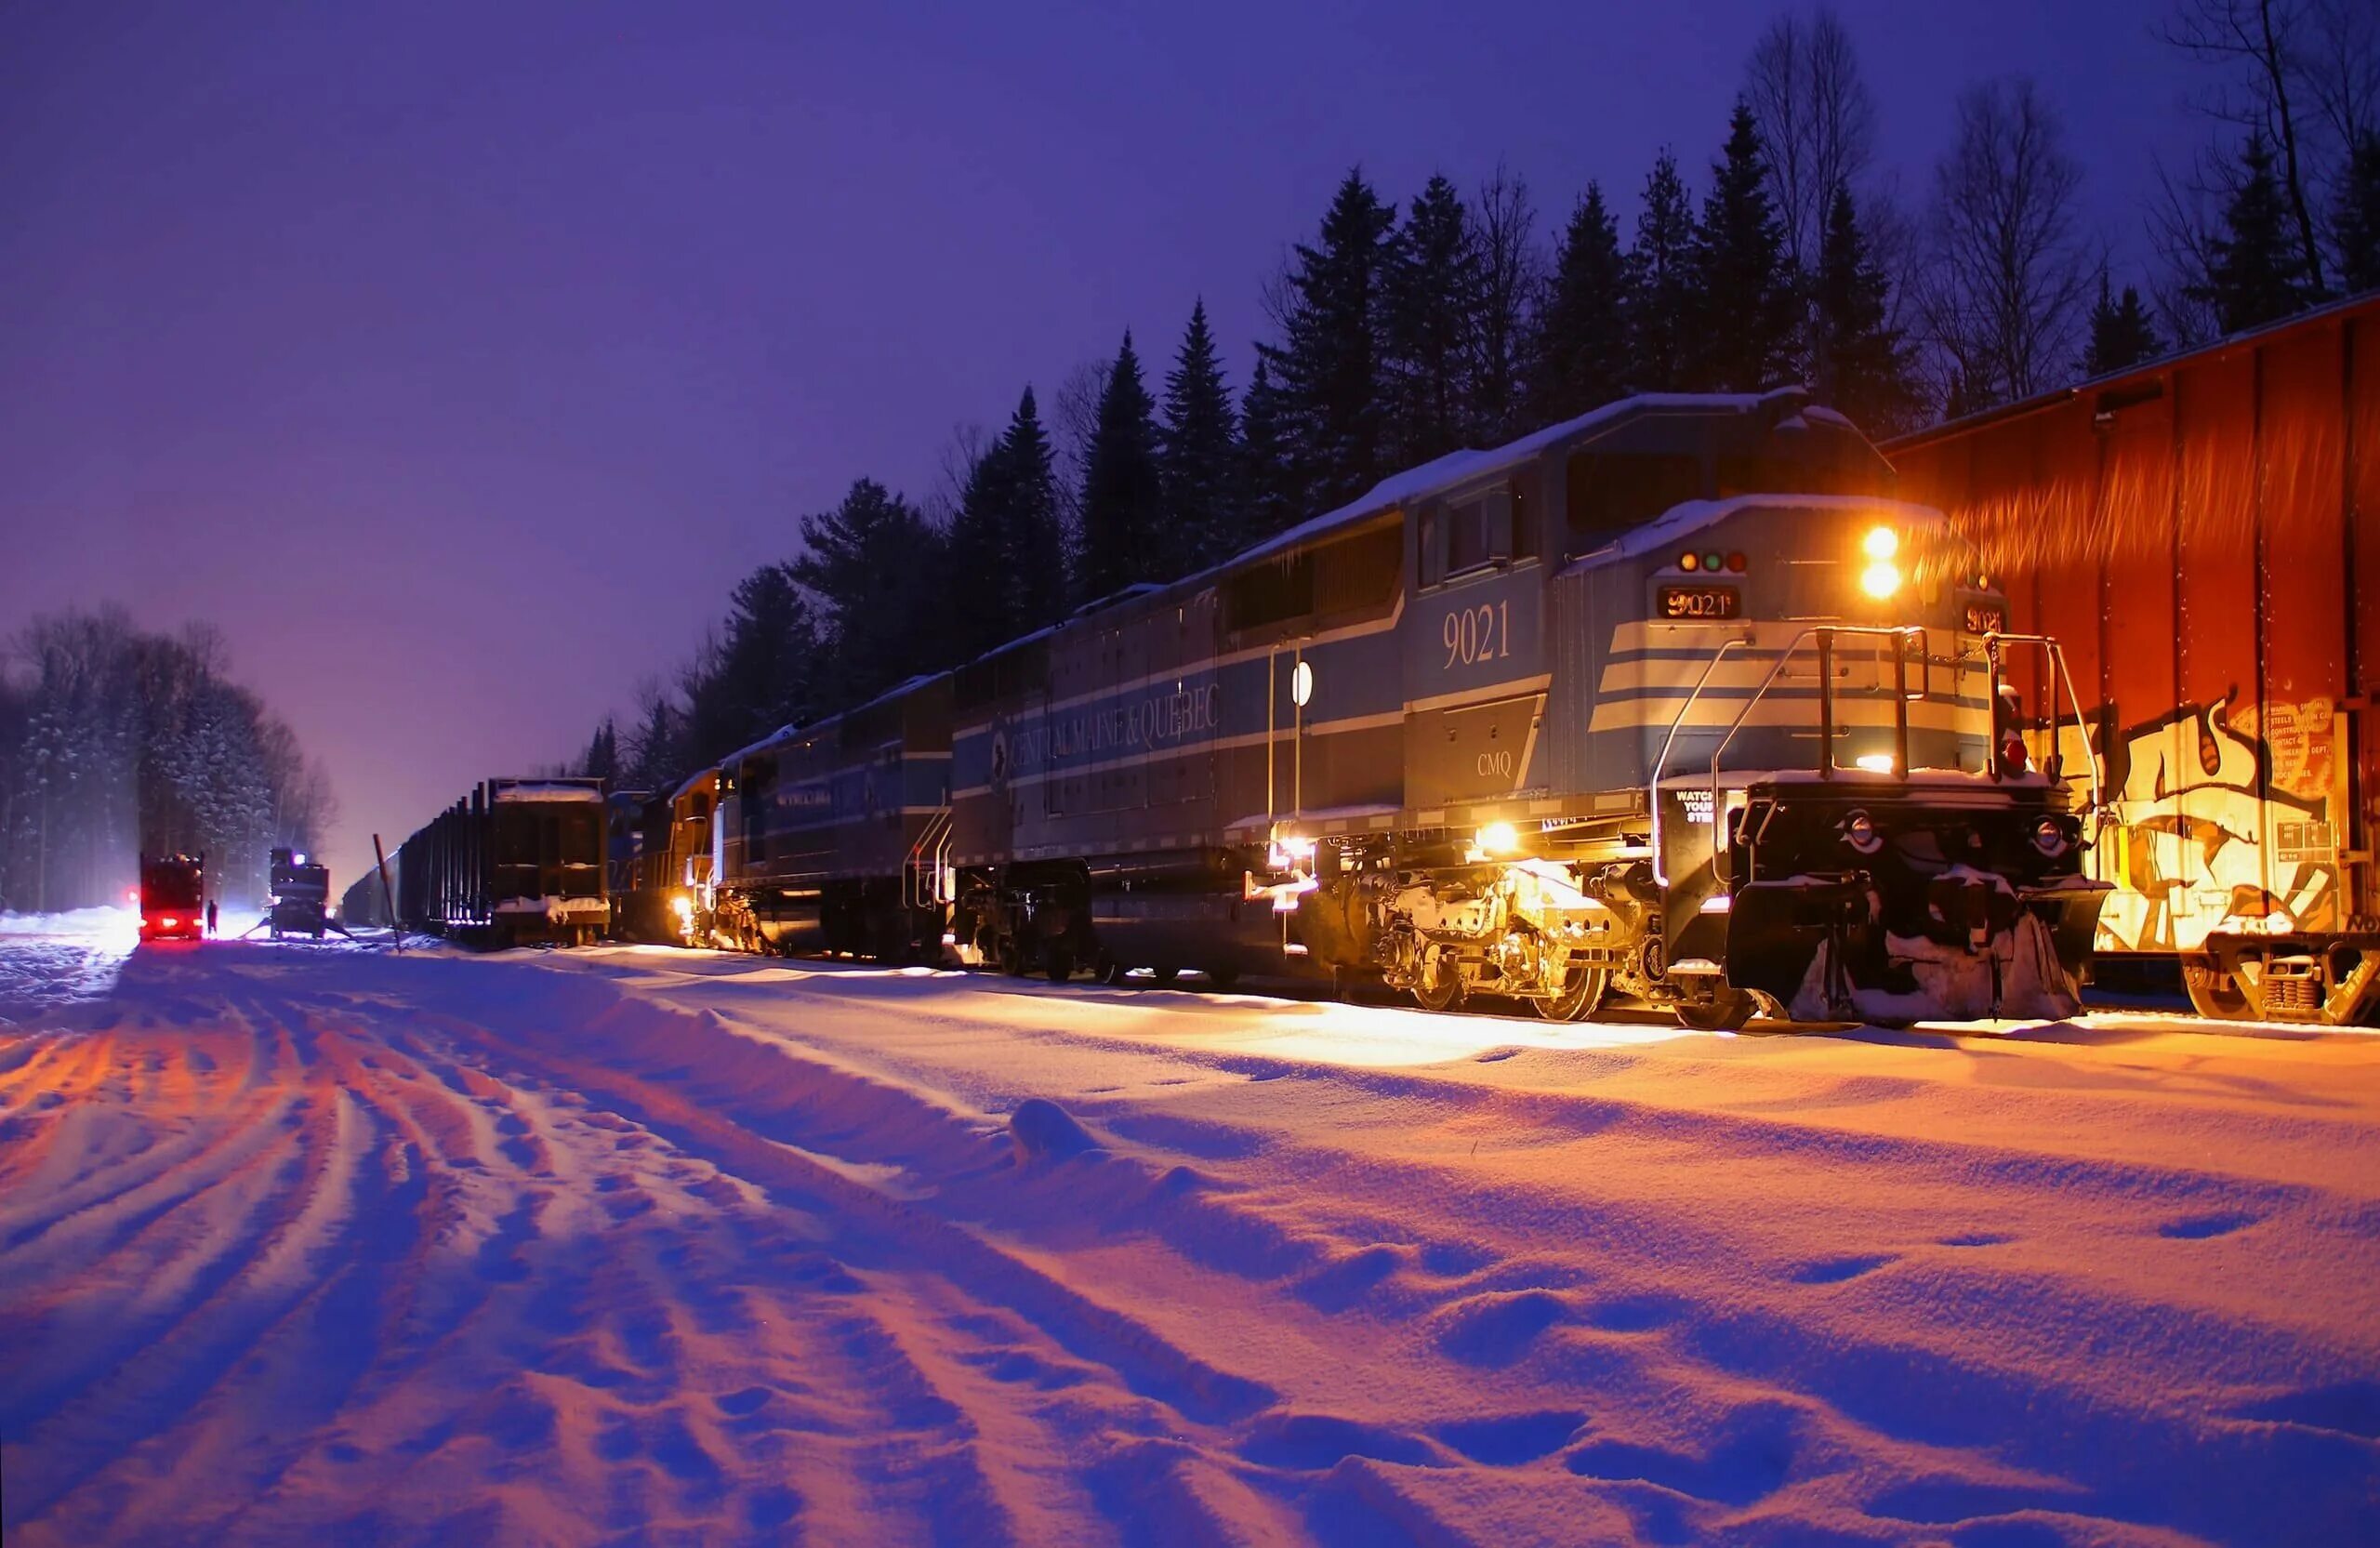 Д т зимнее. Зимний ночной поезд. Поезд зимой. Поезд ночью зимой в лесу. Паровоз зимой.